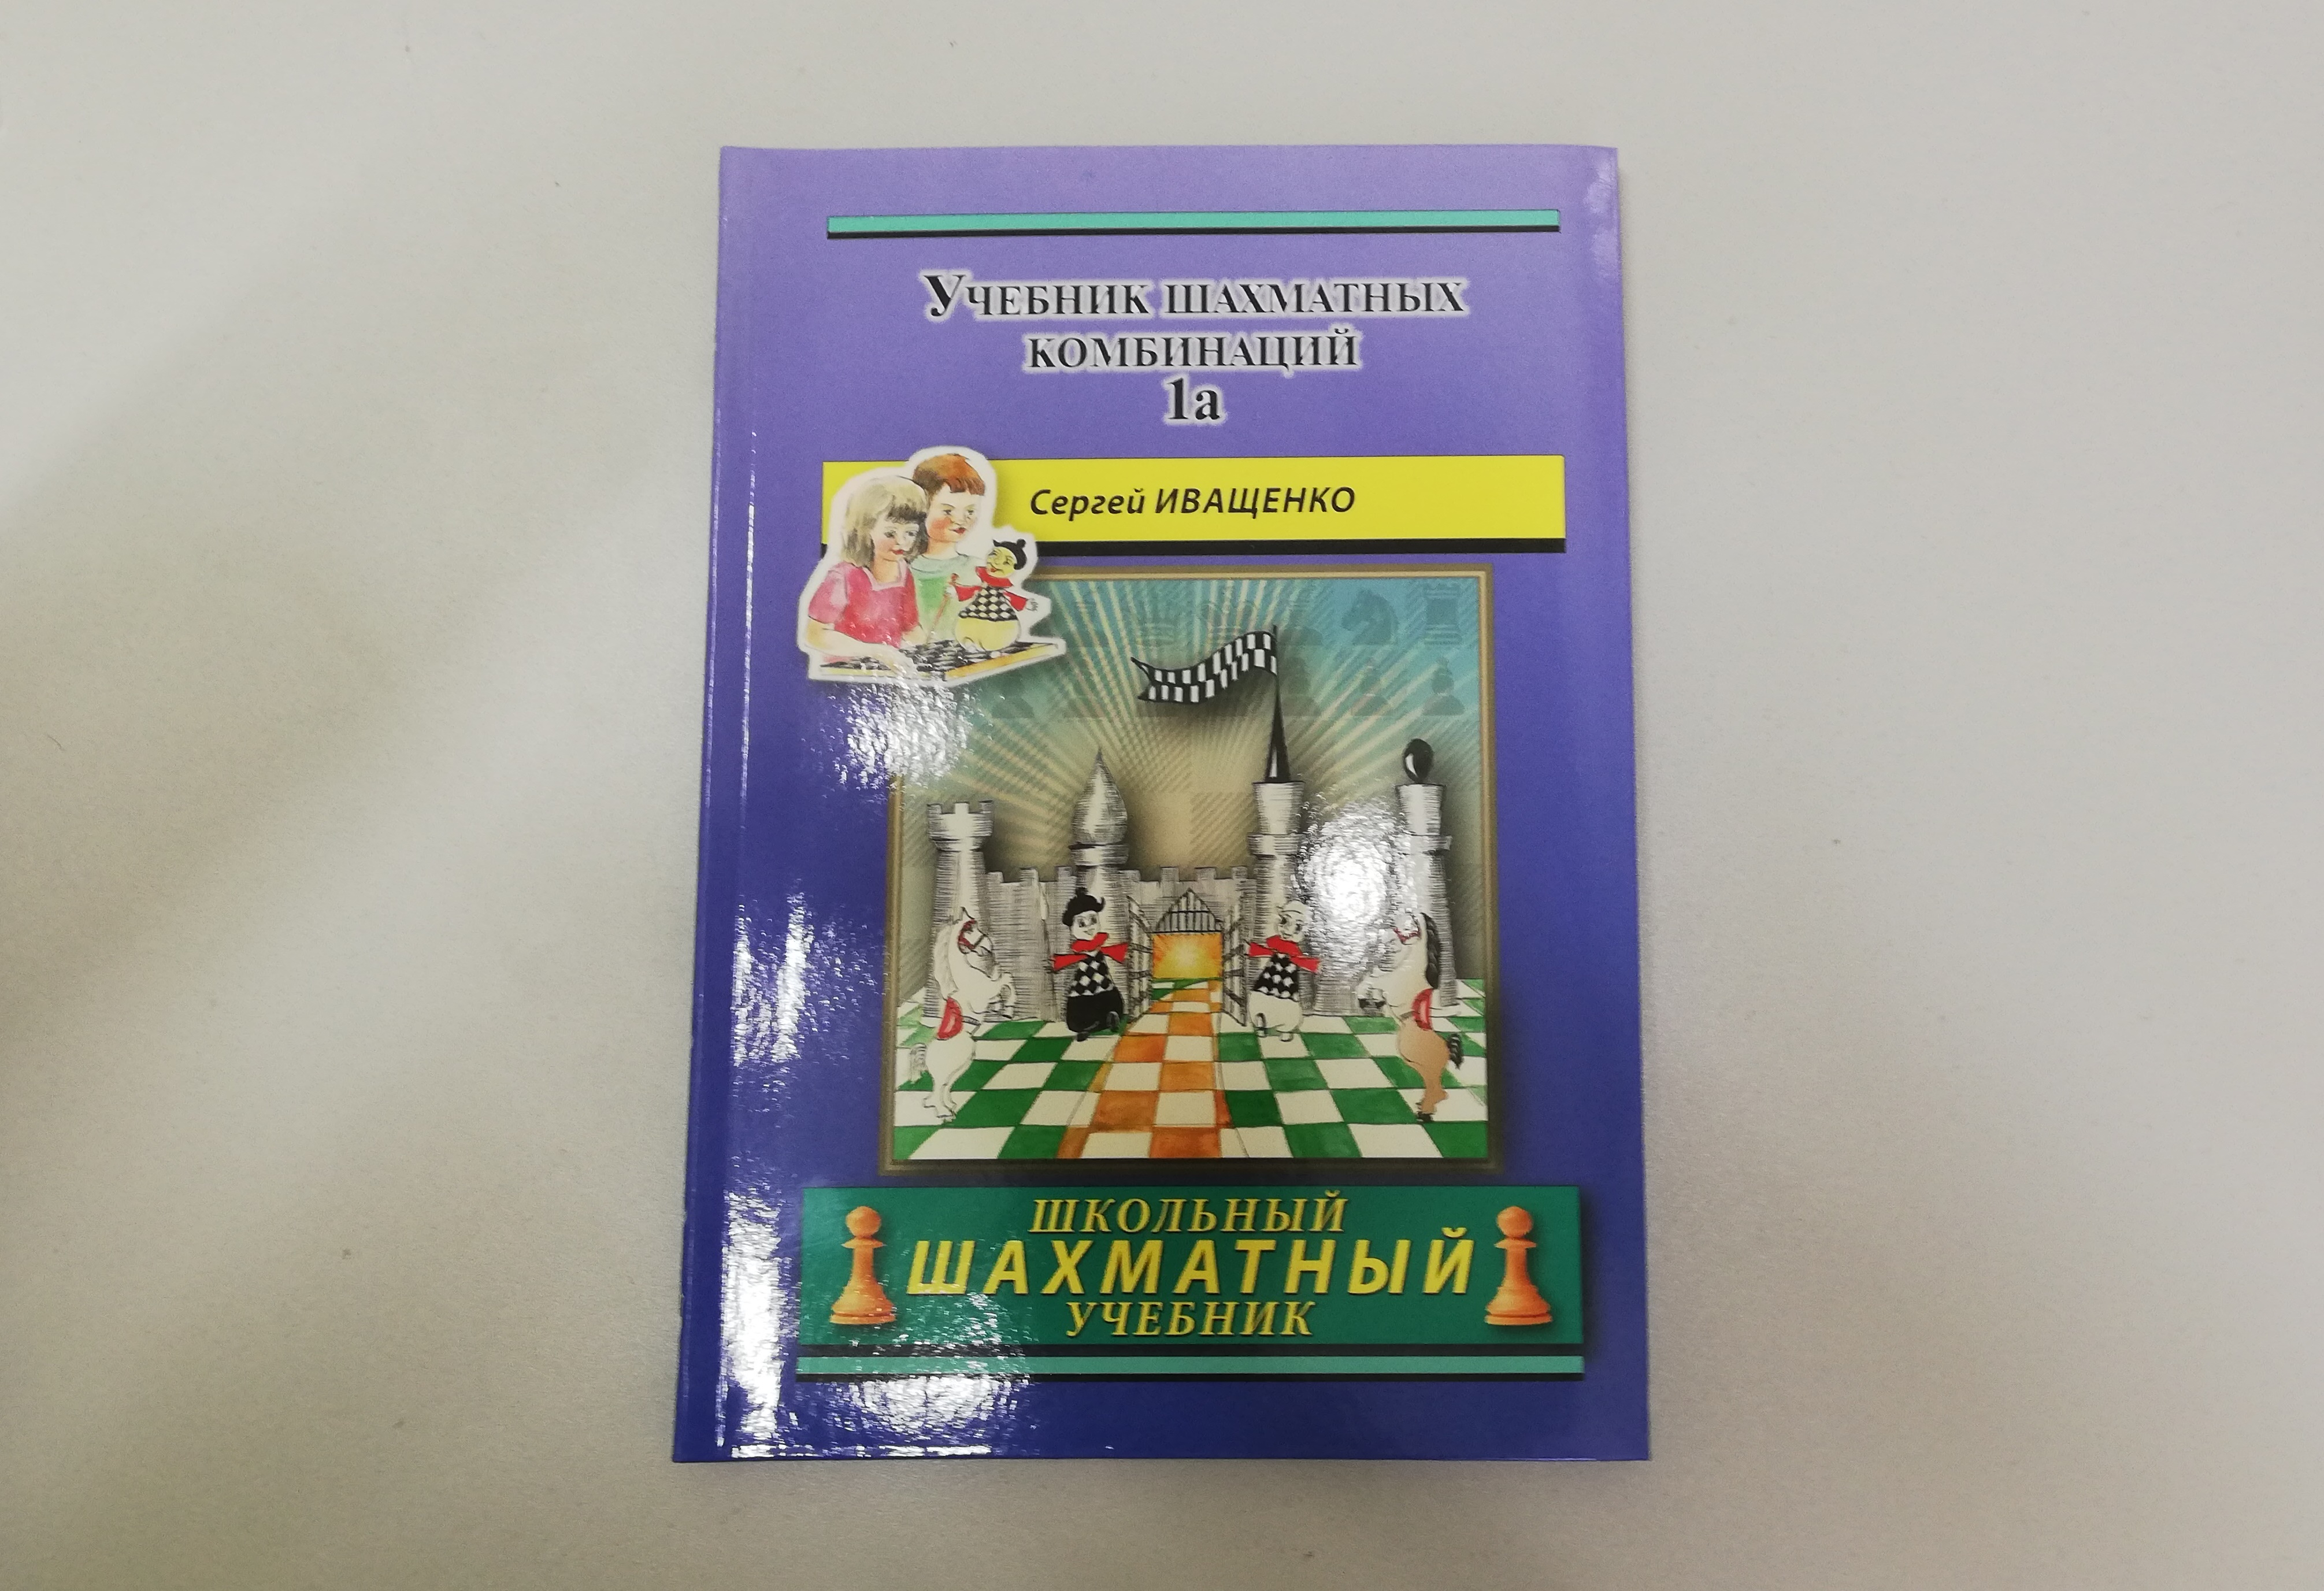 «Учебник шахматных комбинаций. Том 1а» Автор книги: Иващенко С.